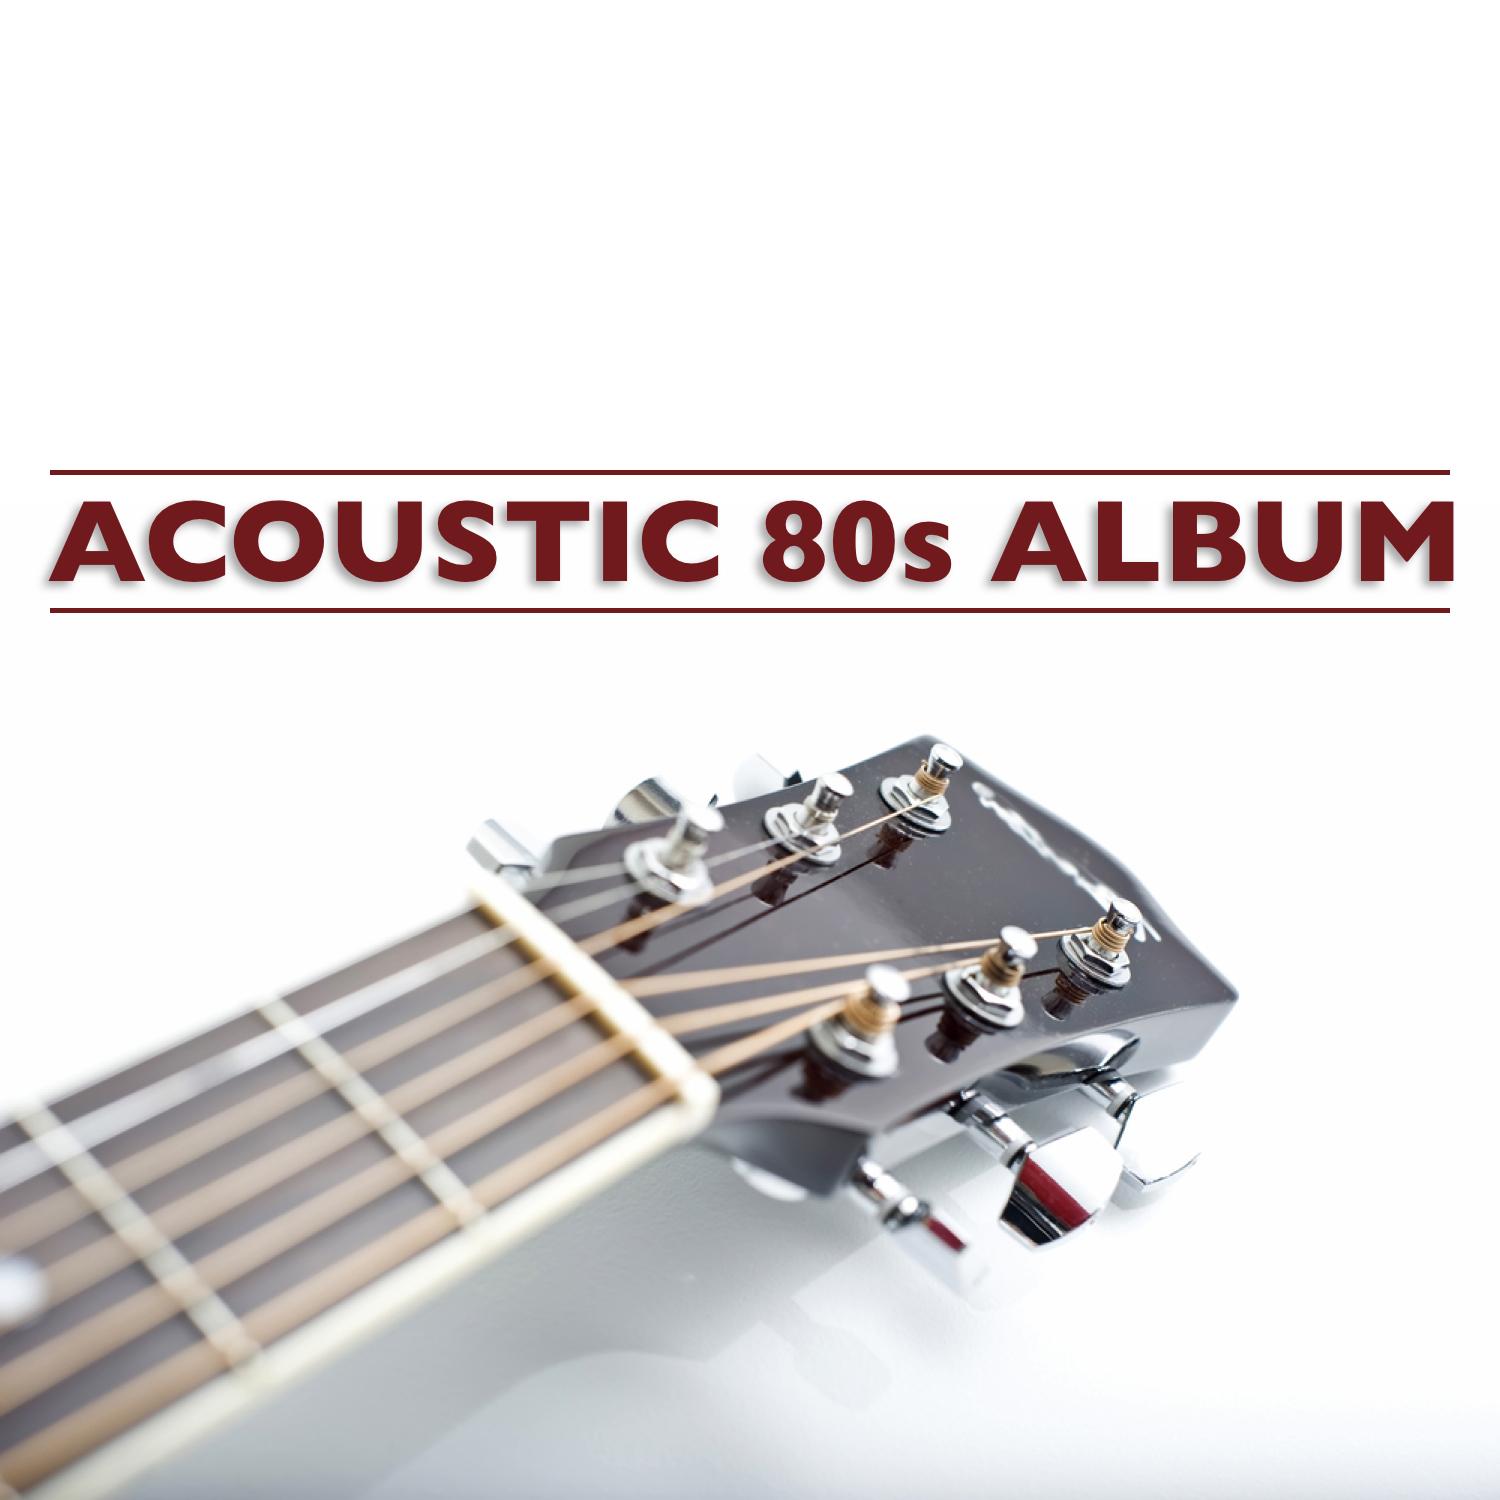 Acoustic 80s Album